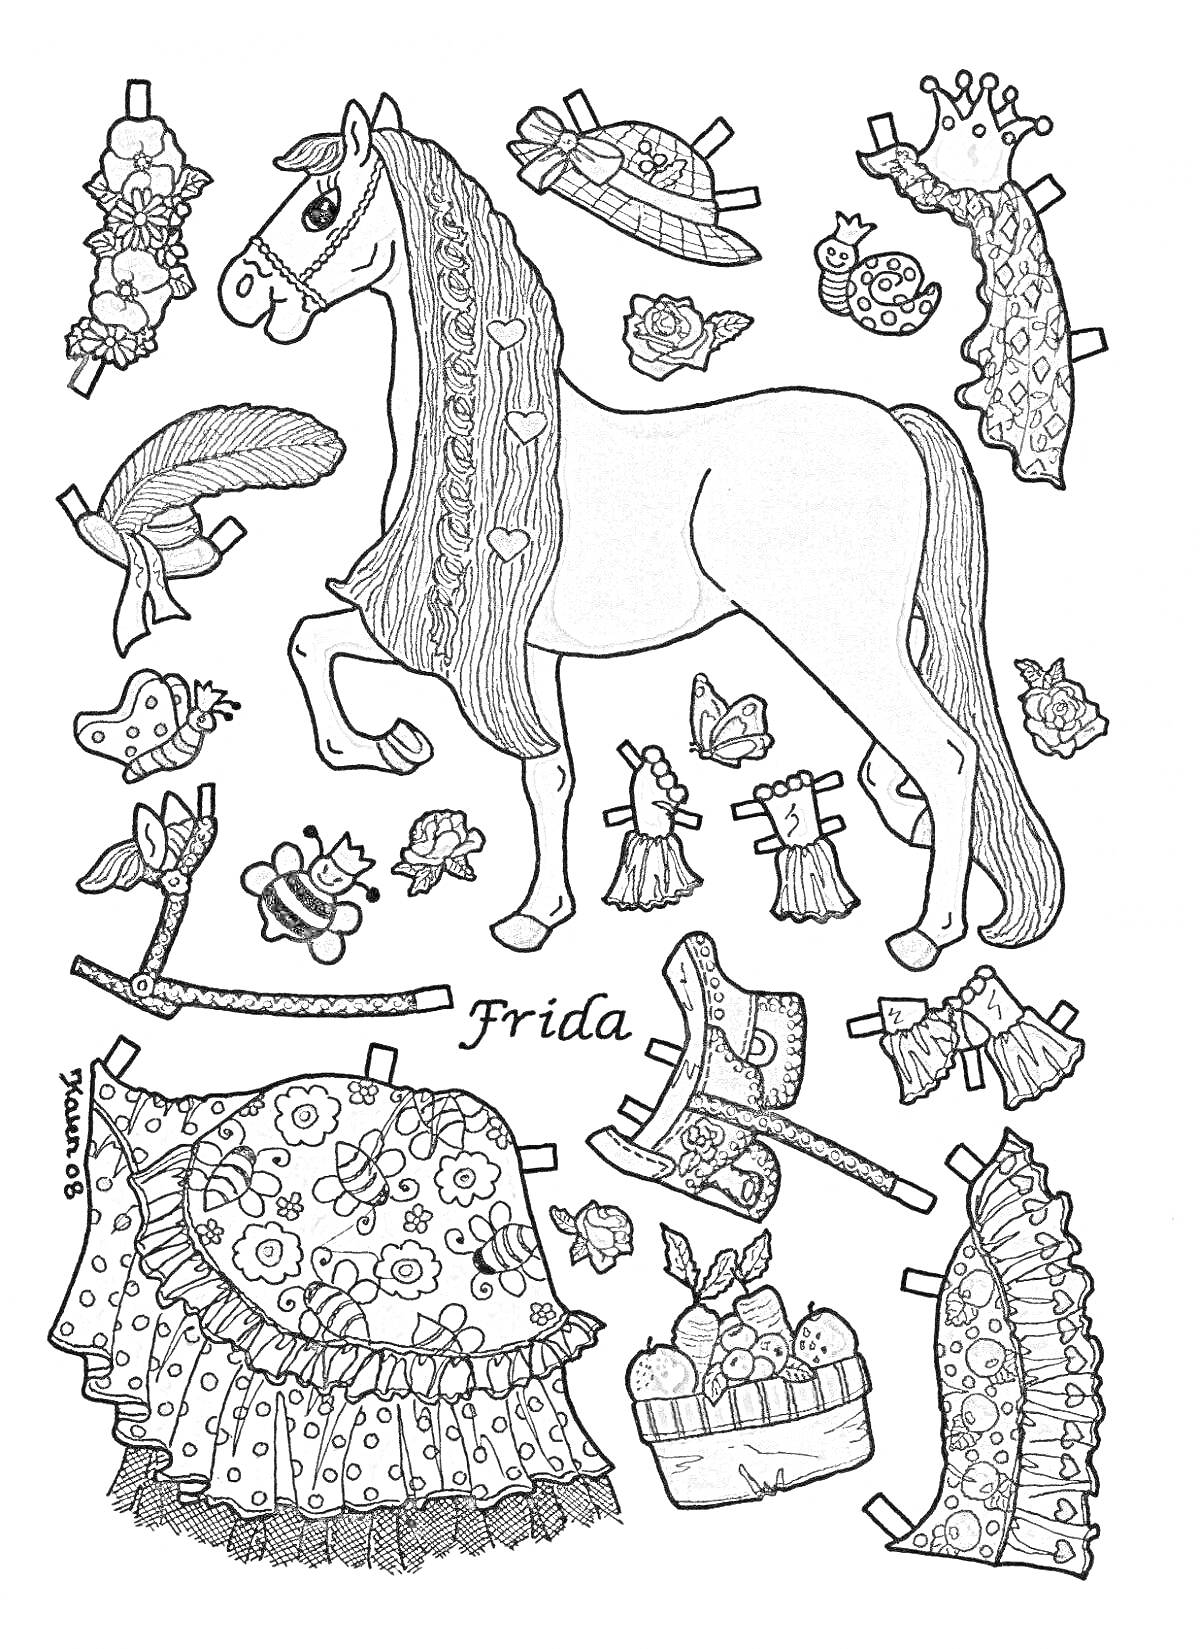 На раскраске изображено: Лошадь, Одежда, Шляпа, Корона, Платок, Обувь, Сбруя, Юбка, Цветы, Корзина, Перья, Браслет